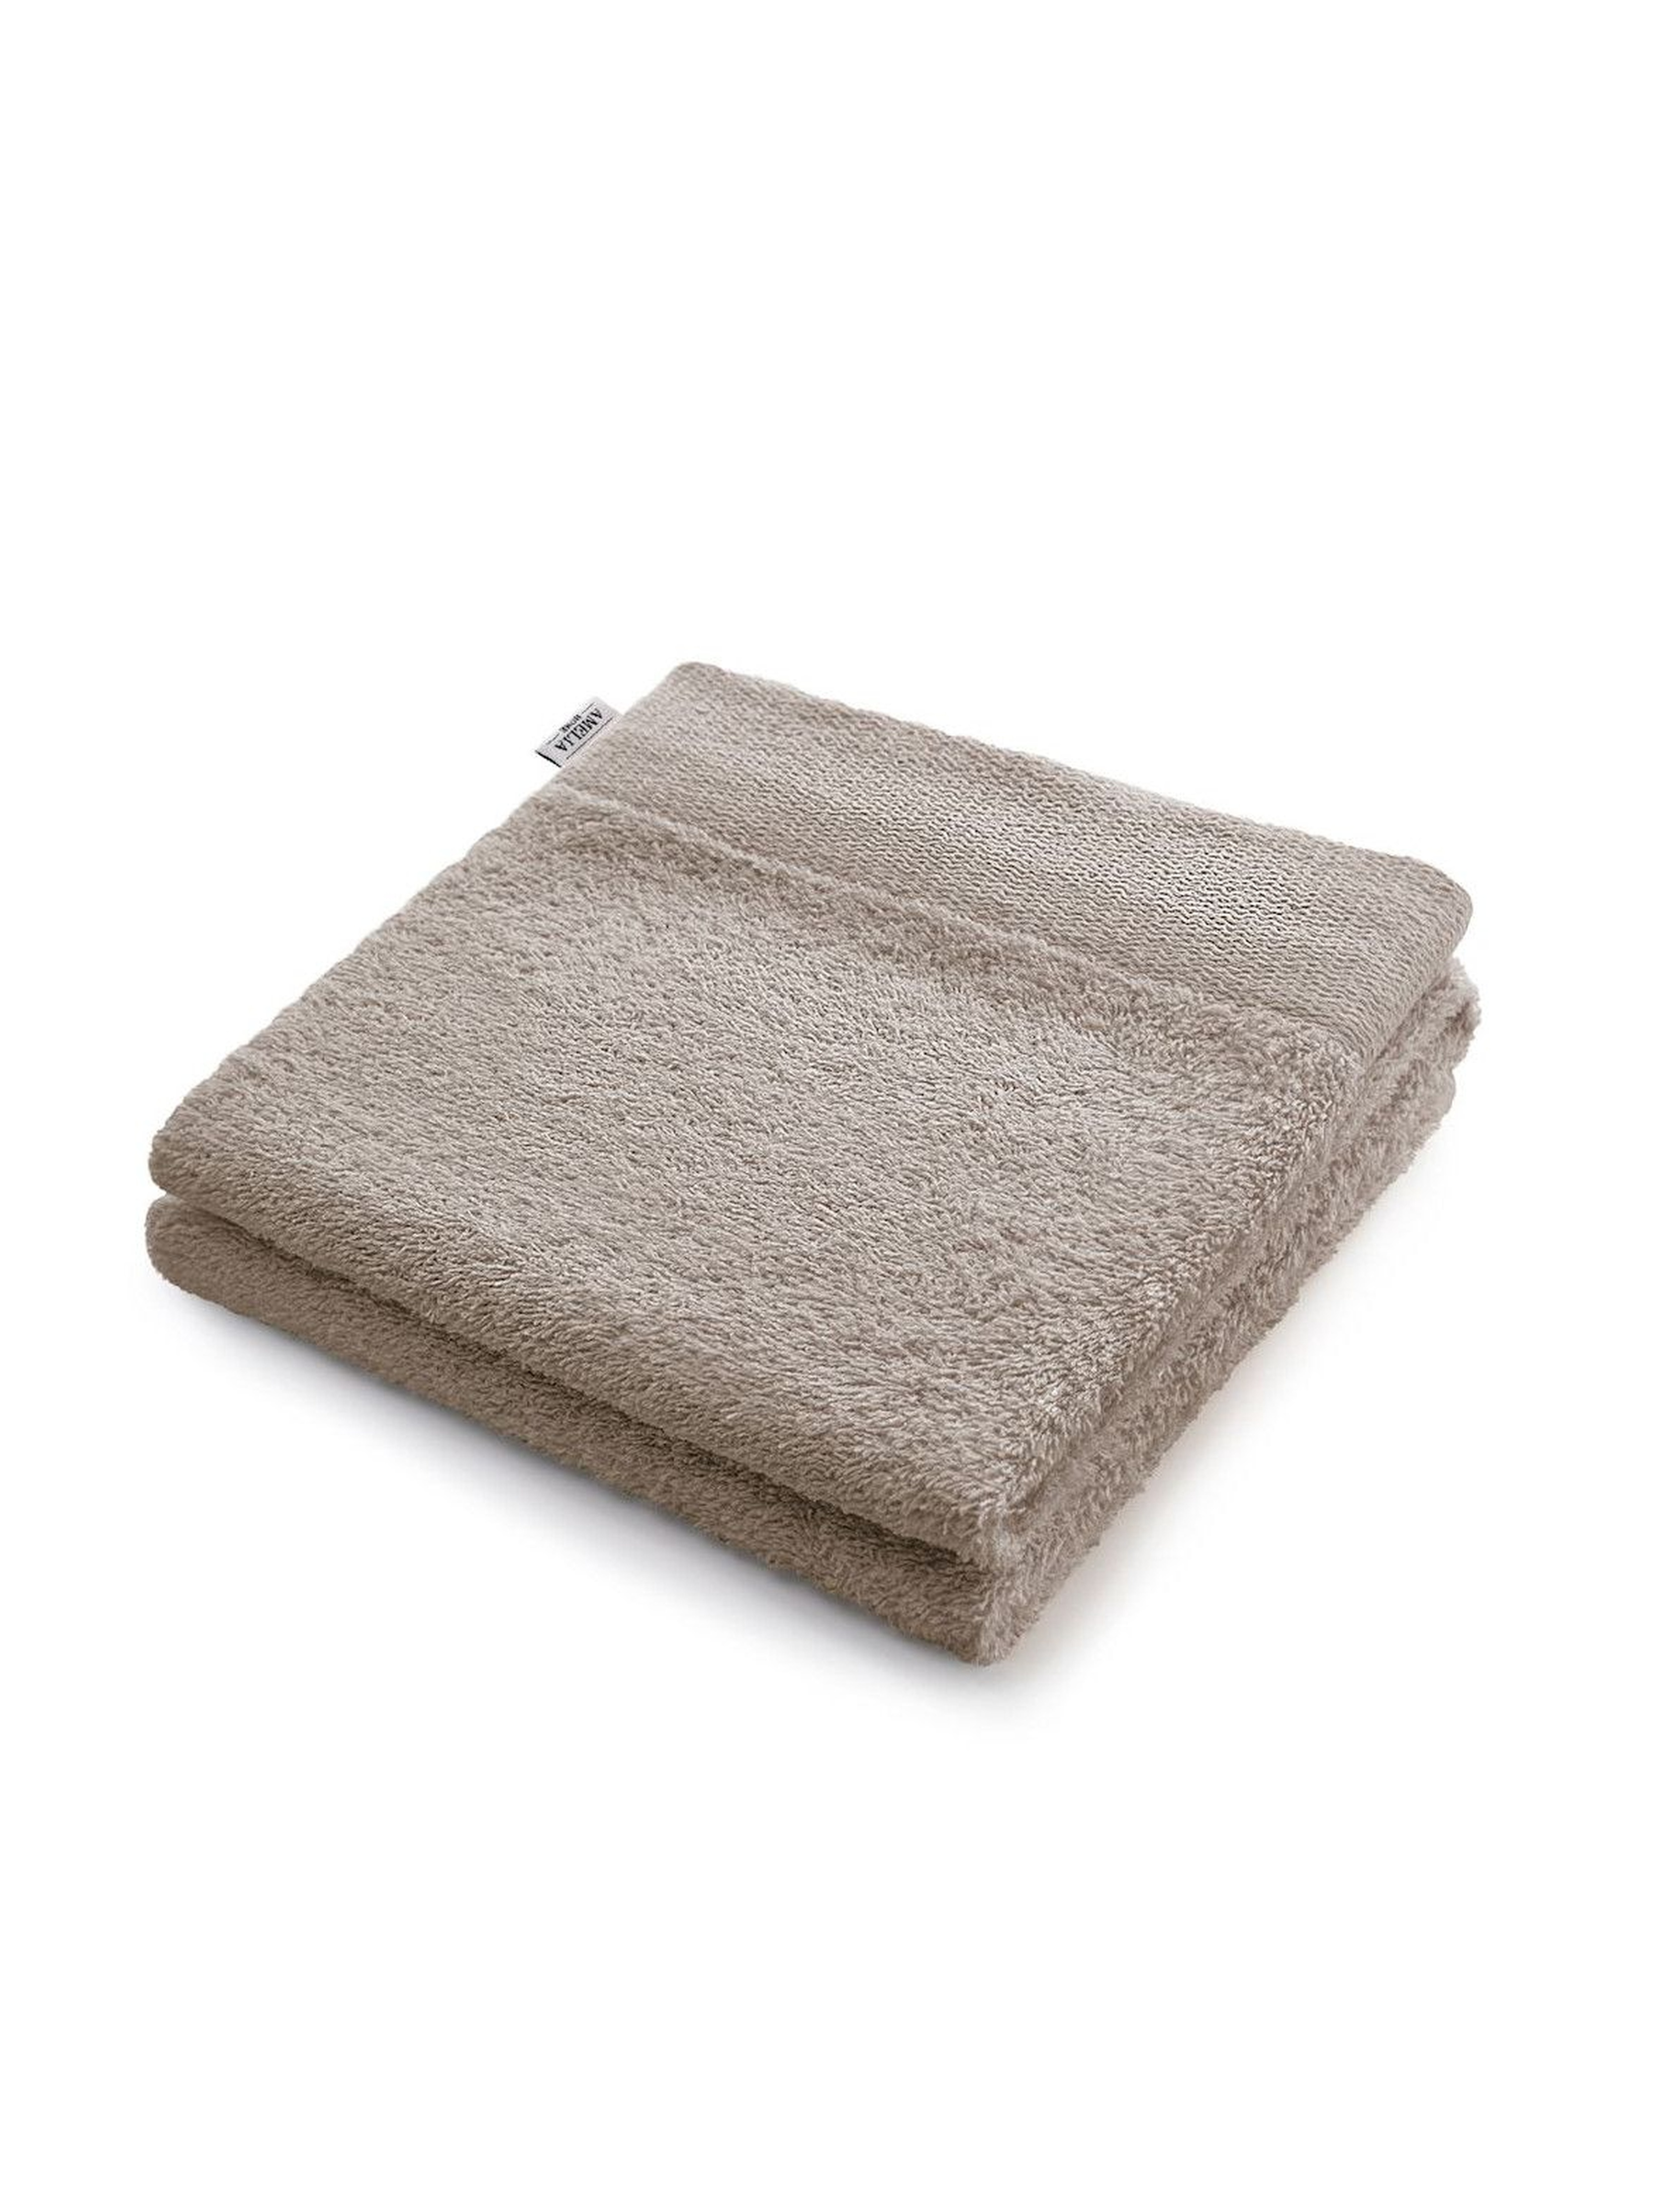 Bawełniany ręcznik - szary 70x140cm